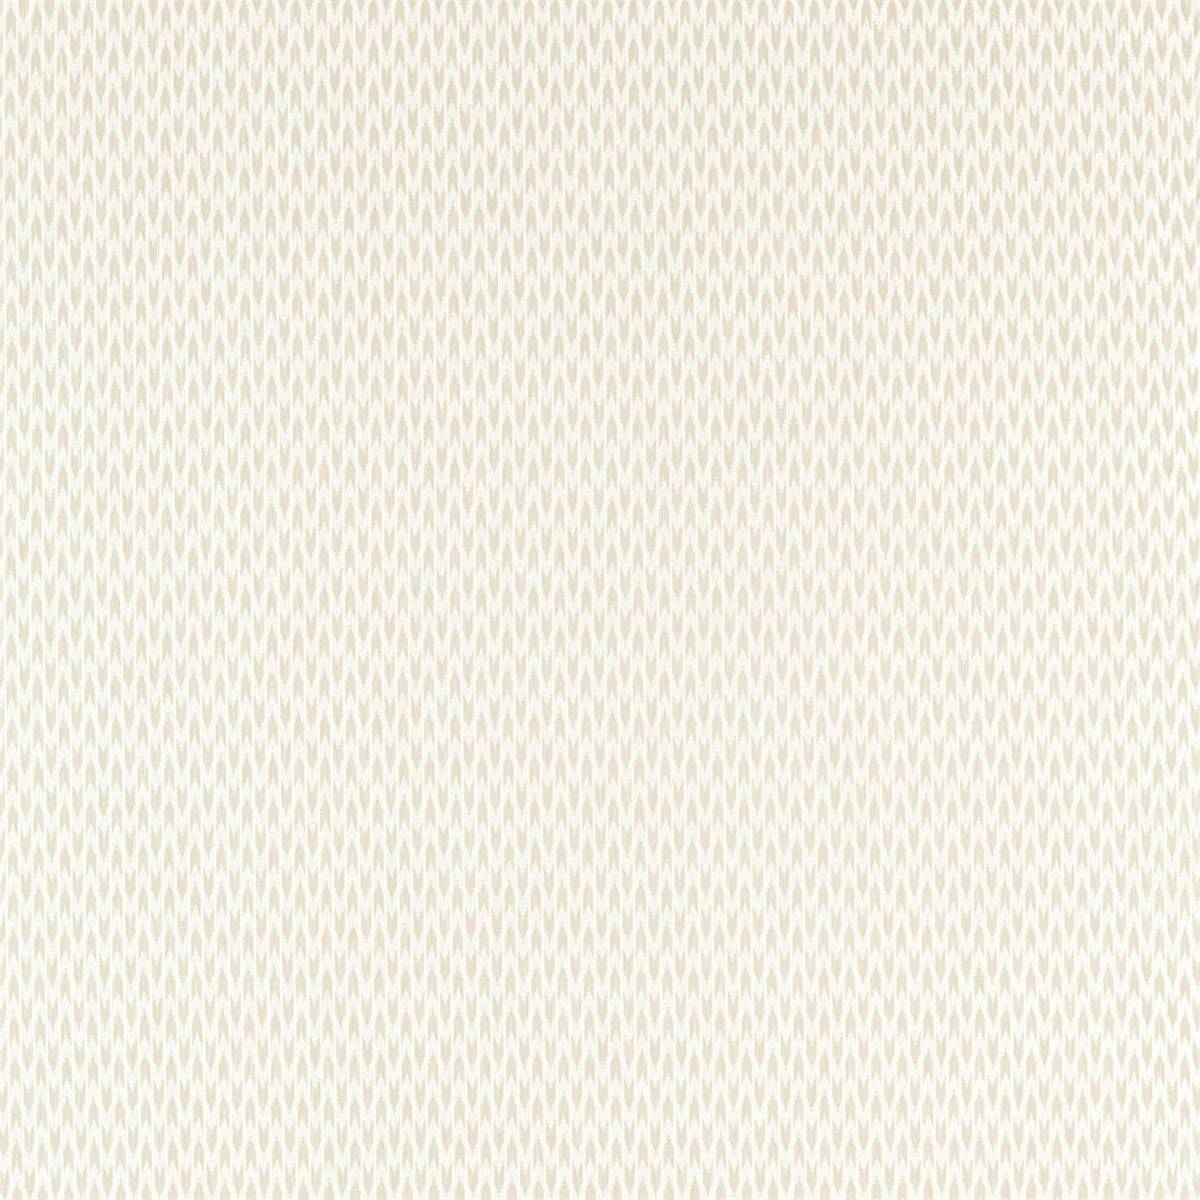 Hutton Silver Fern Fabric by Sanderson